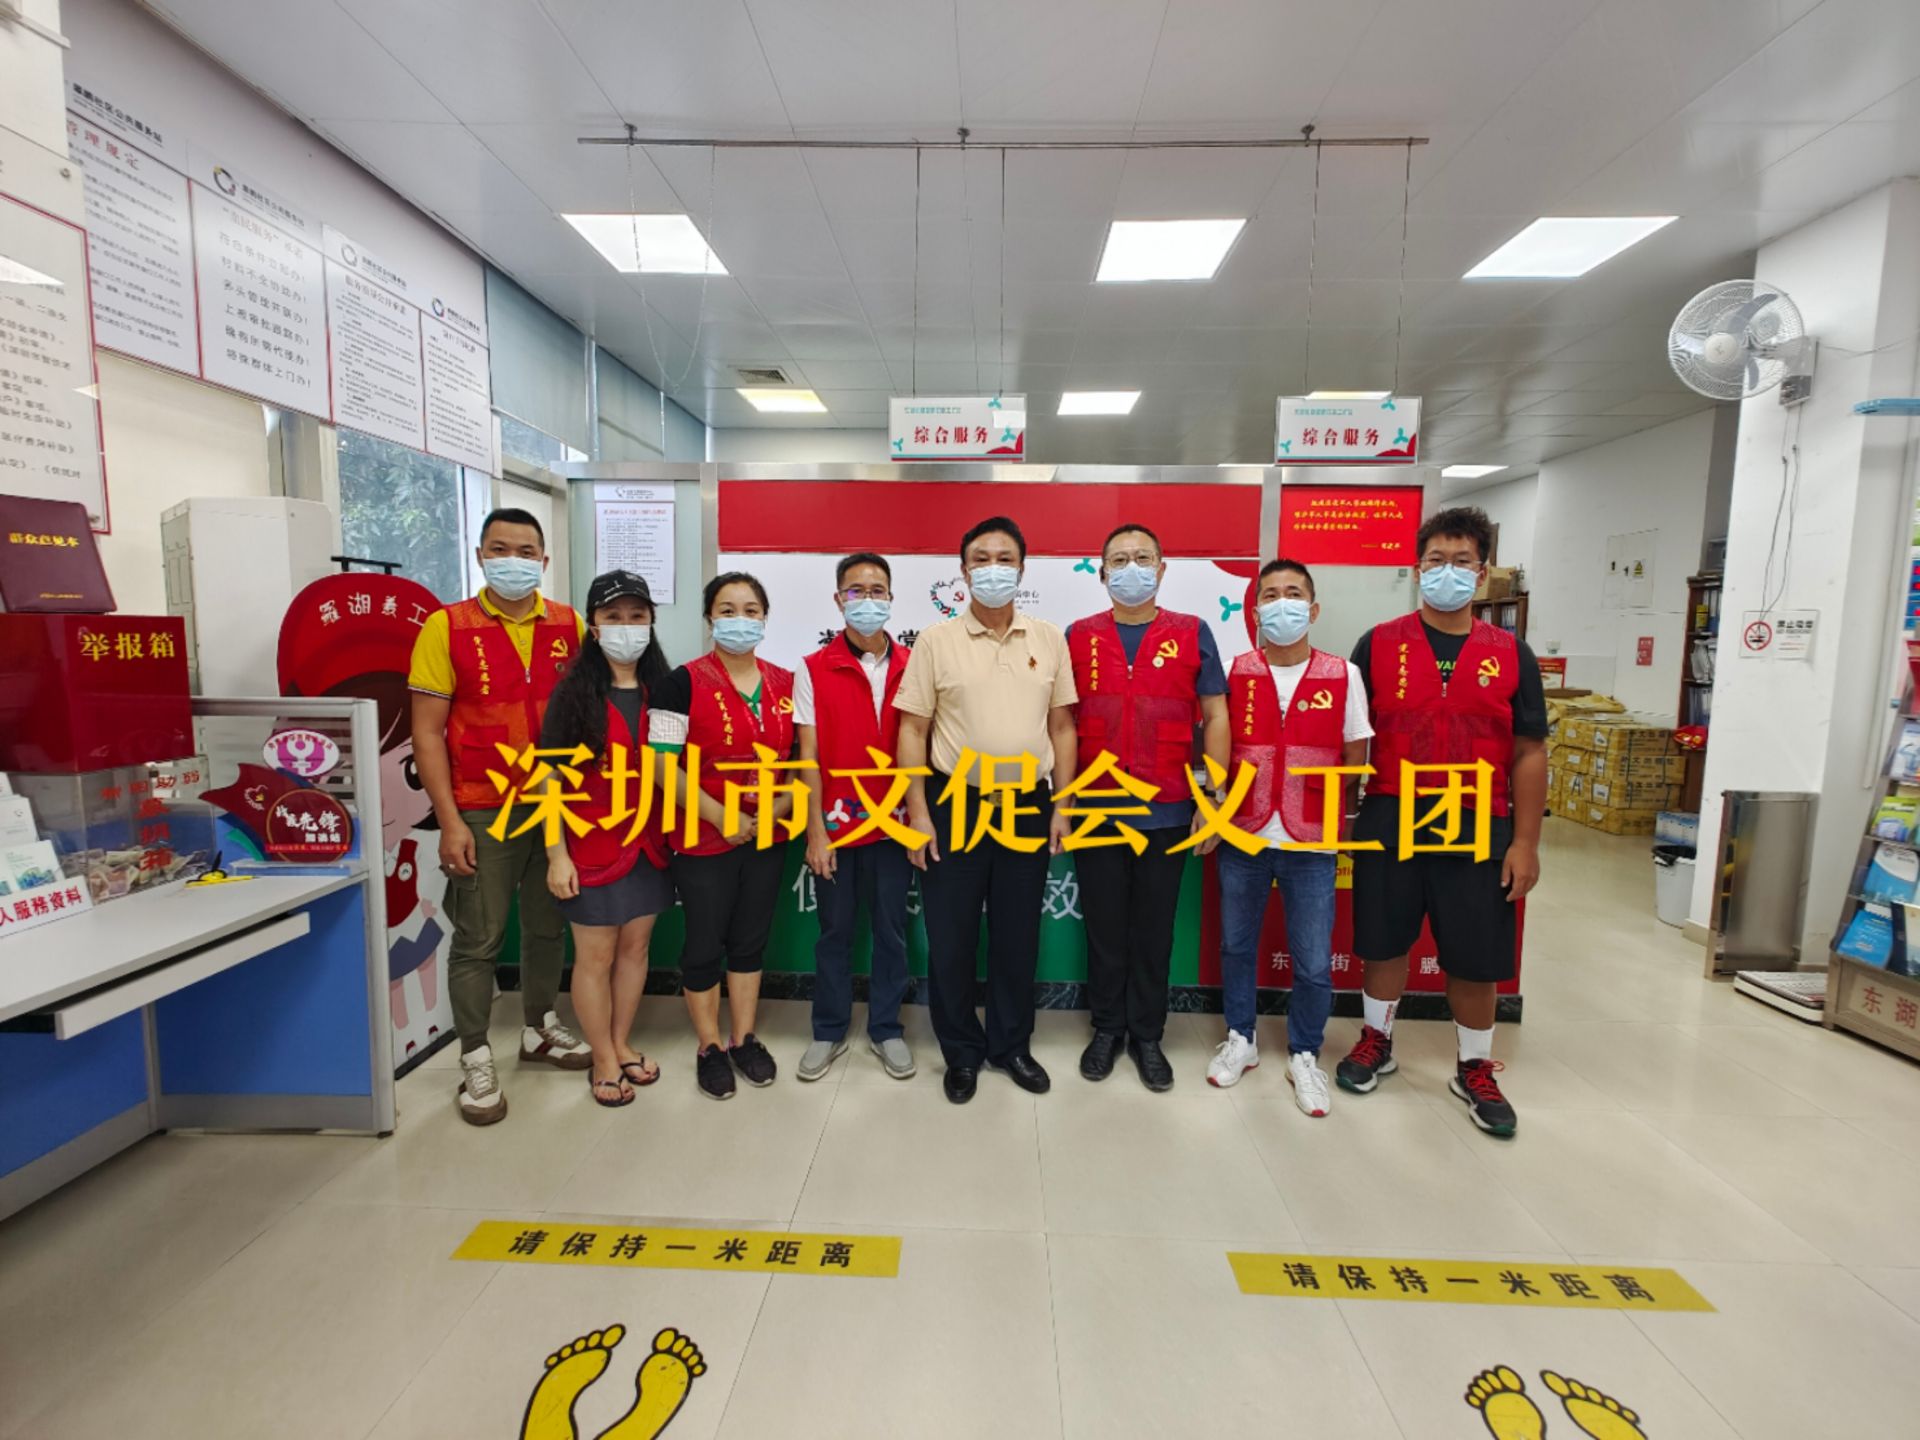 助力东湖街道疫情防控 深圳市文促会义工队在行动